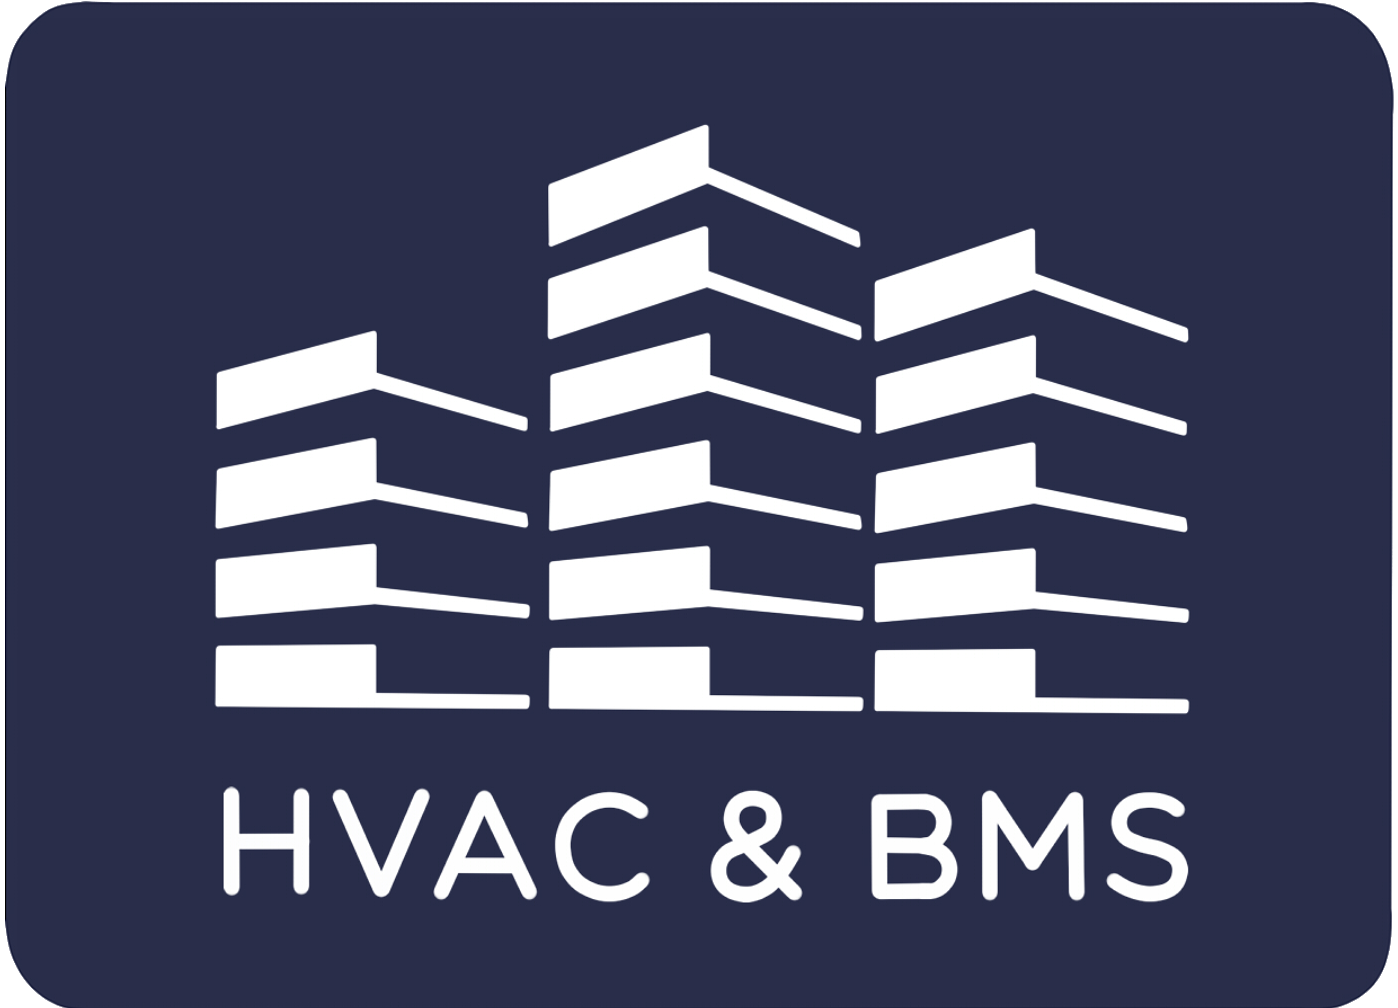 HVAC & BMS